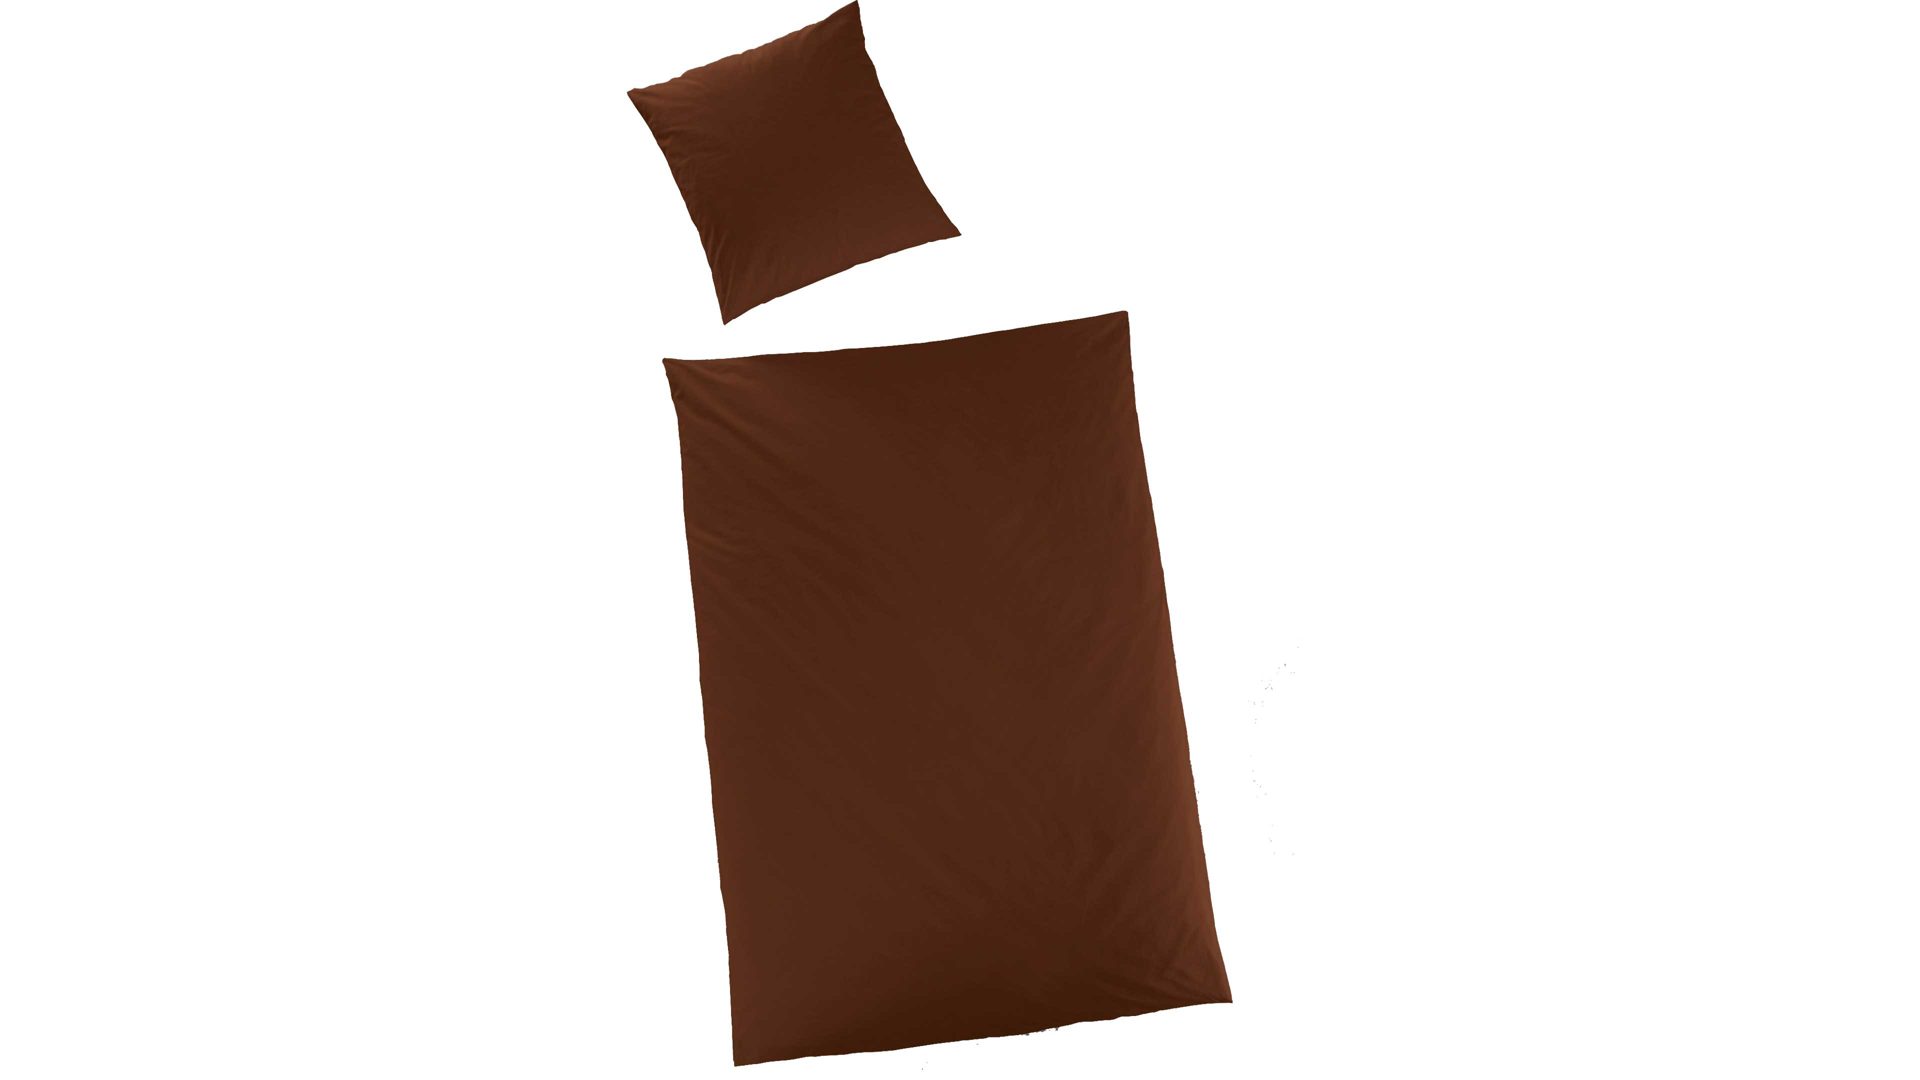 Bettwäsche-Set H.g. hahn haustextilien aus Stoff in Dunkelbraun HAHN Luxus-Satin-Bettwäsche Sempre brauner Baumwollsatin – zweiteilig, ca. 155 x 220 cm